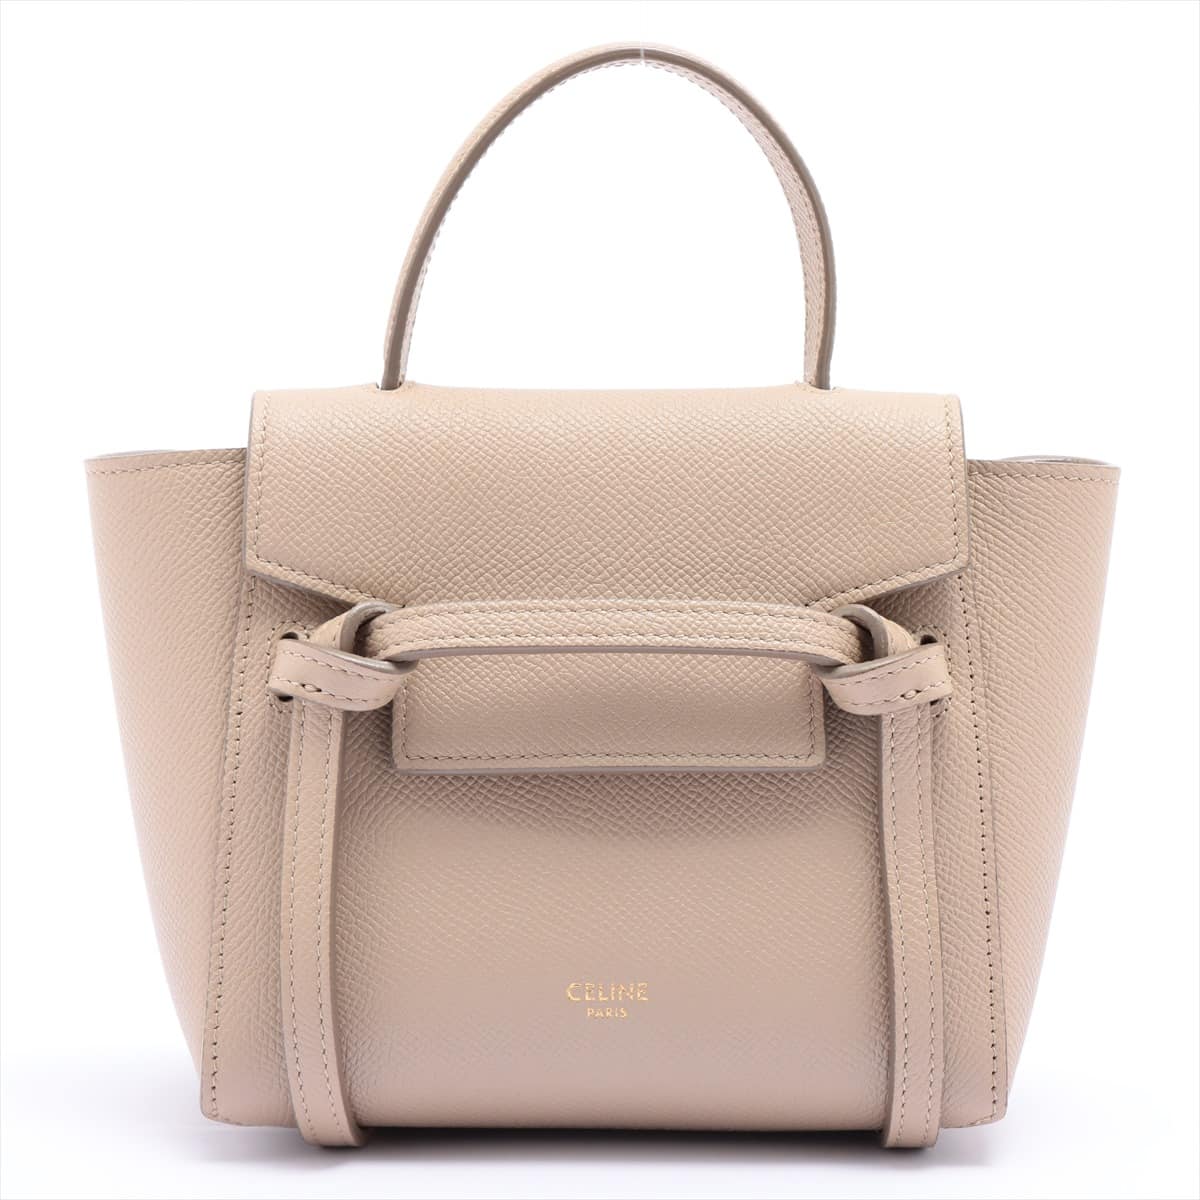 CELINE Belt Bag Nano Leather 2way handbag Beige